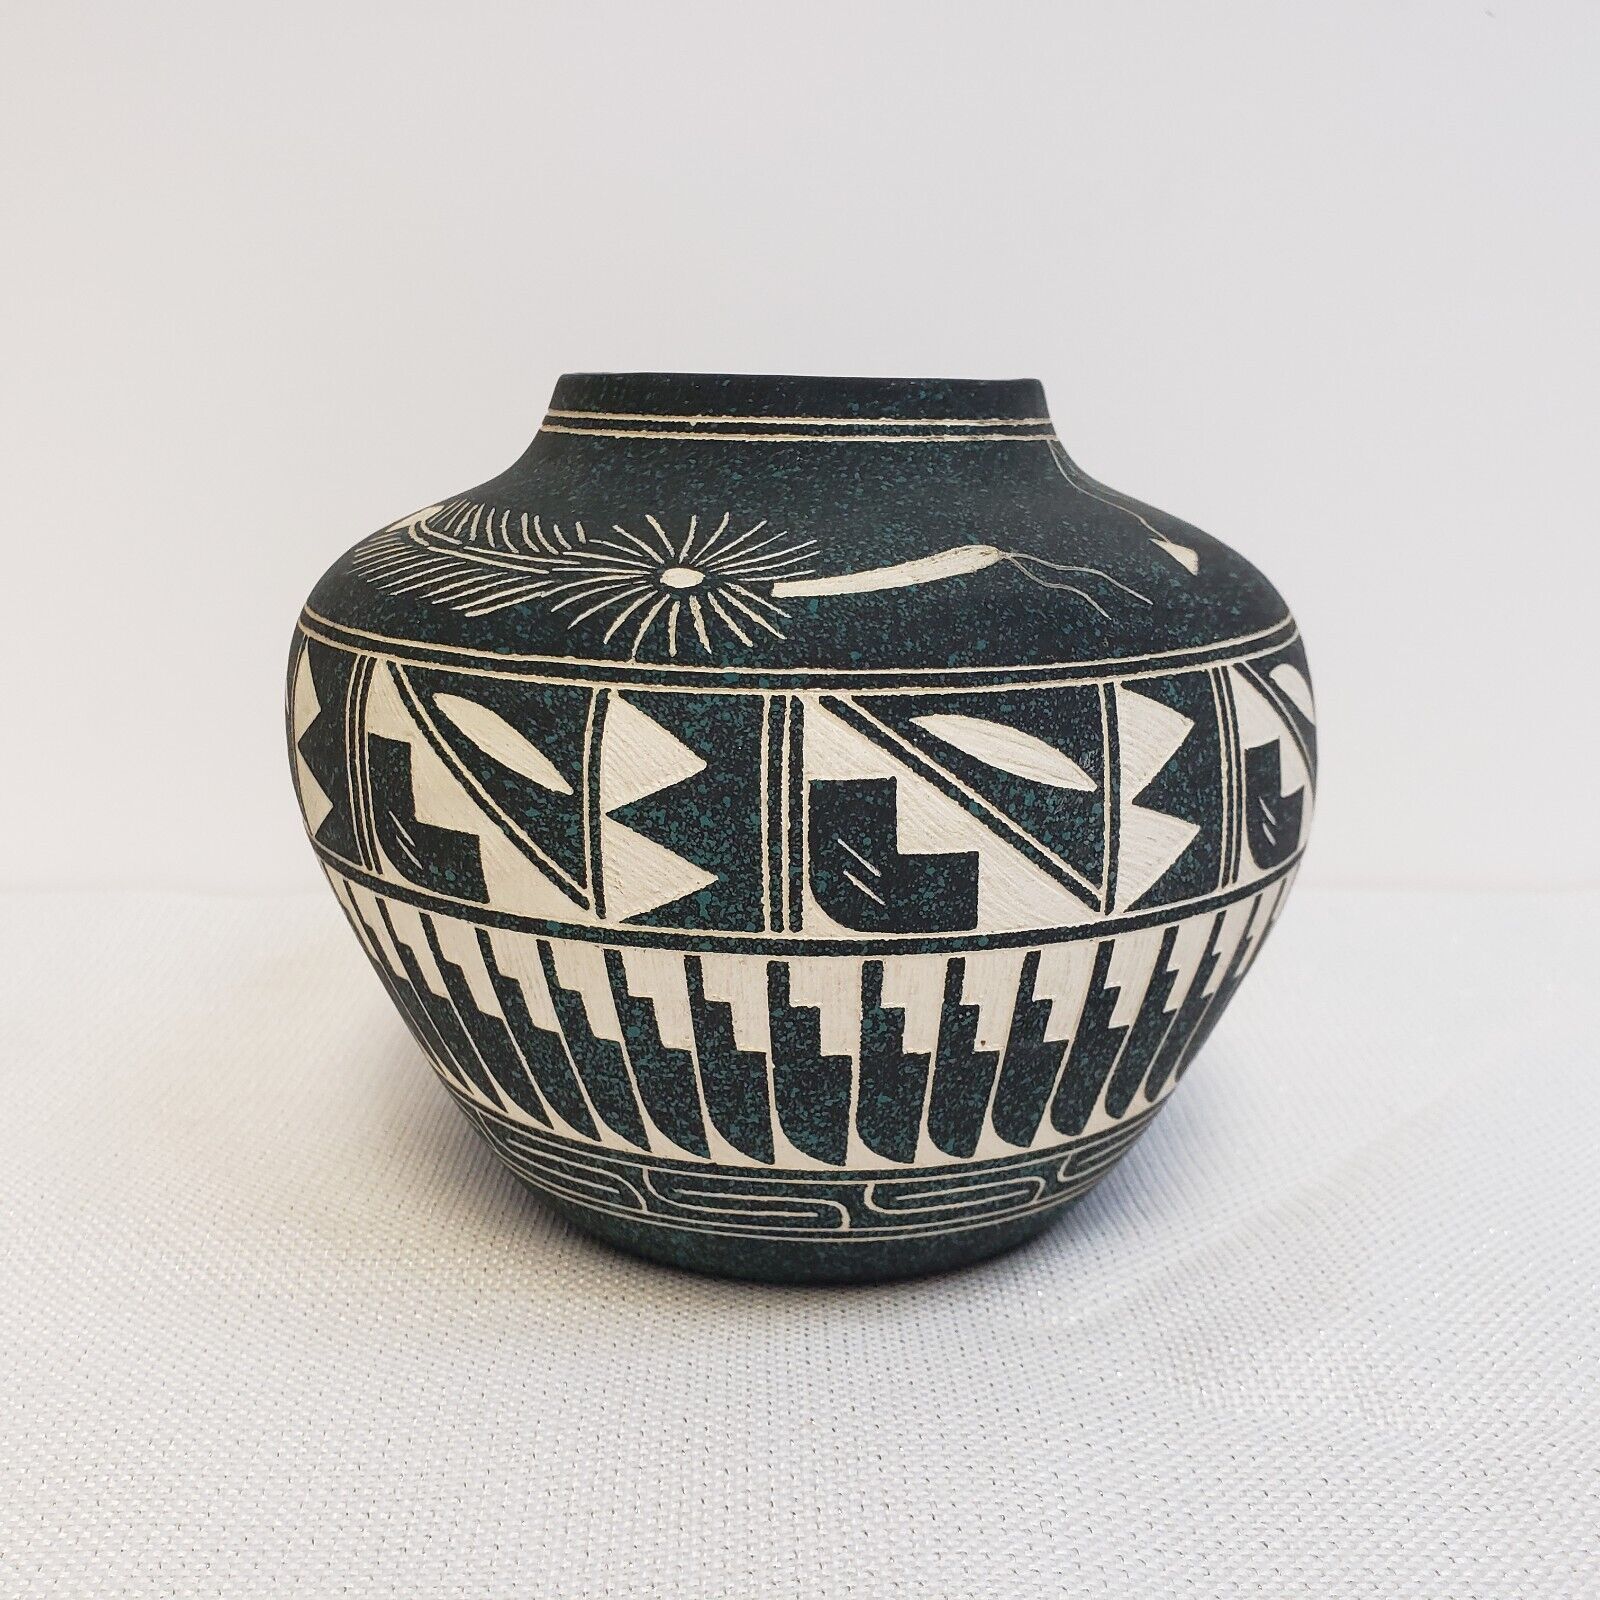 E. Garcia Jr. New Mexico Native American Acoma Pueblo Indian Vase Vessel Pottery